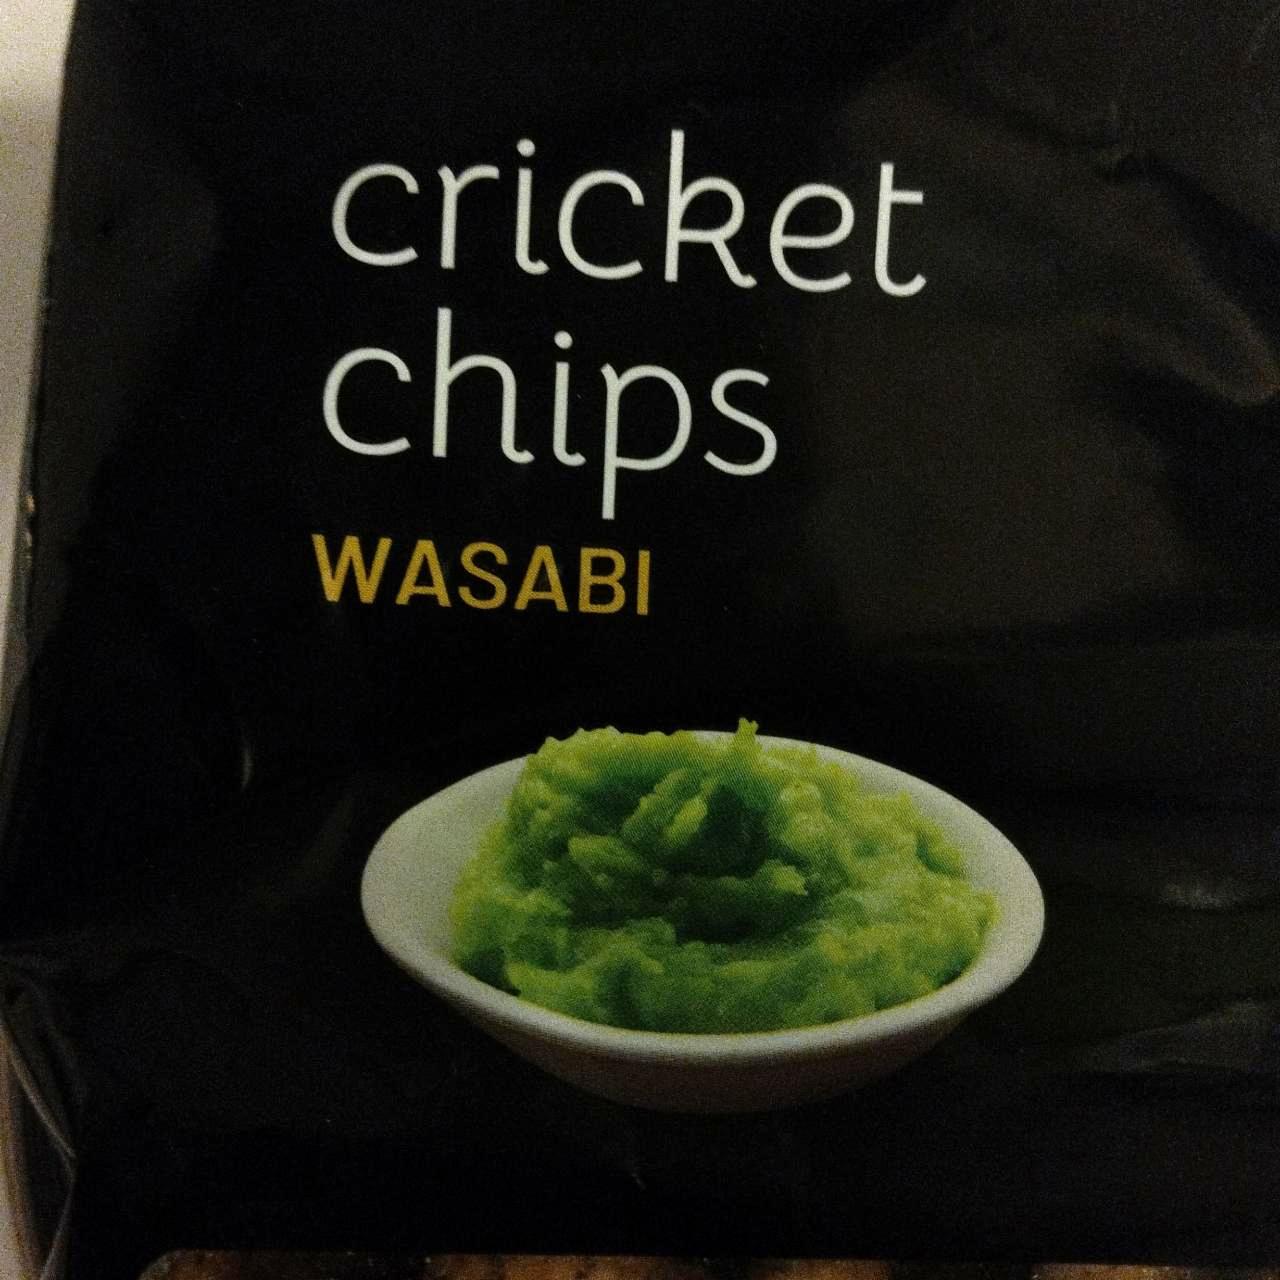 Fotografie - Cricket chips wasabi Grig